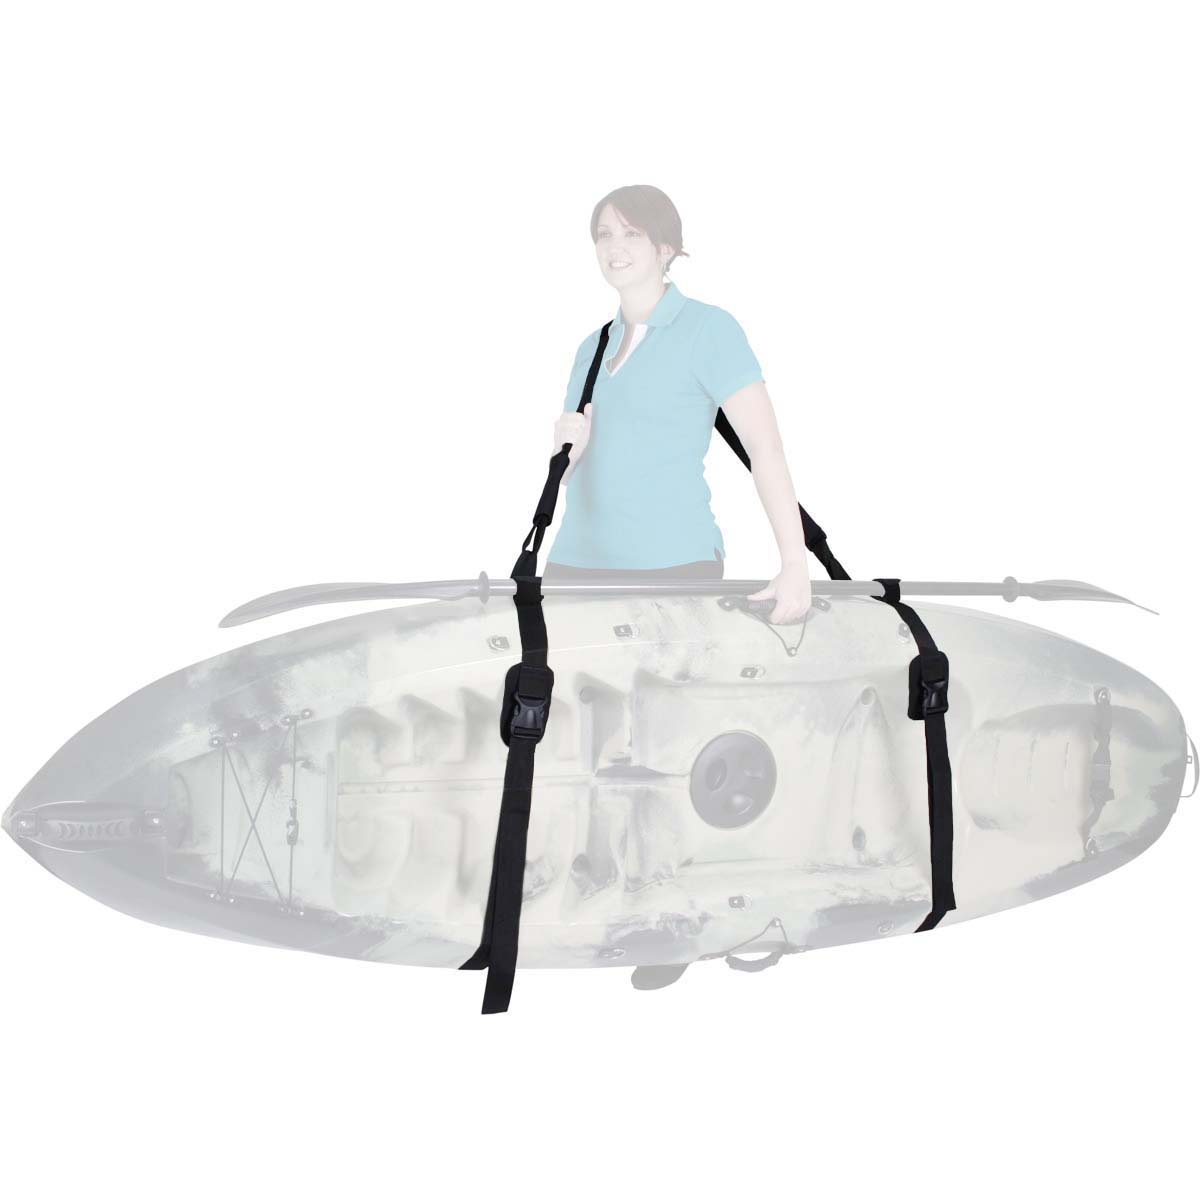 Glide Kayak Carrying Strap